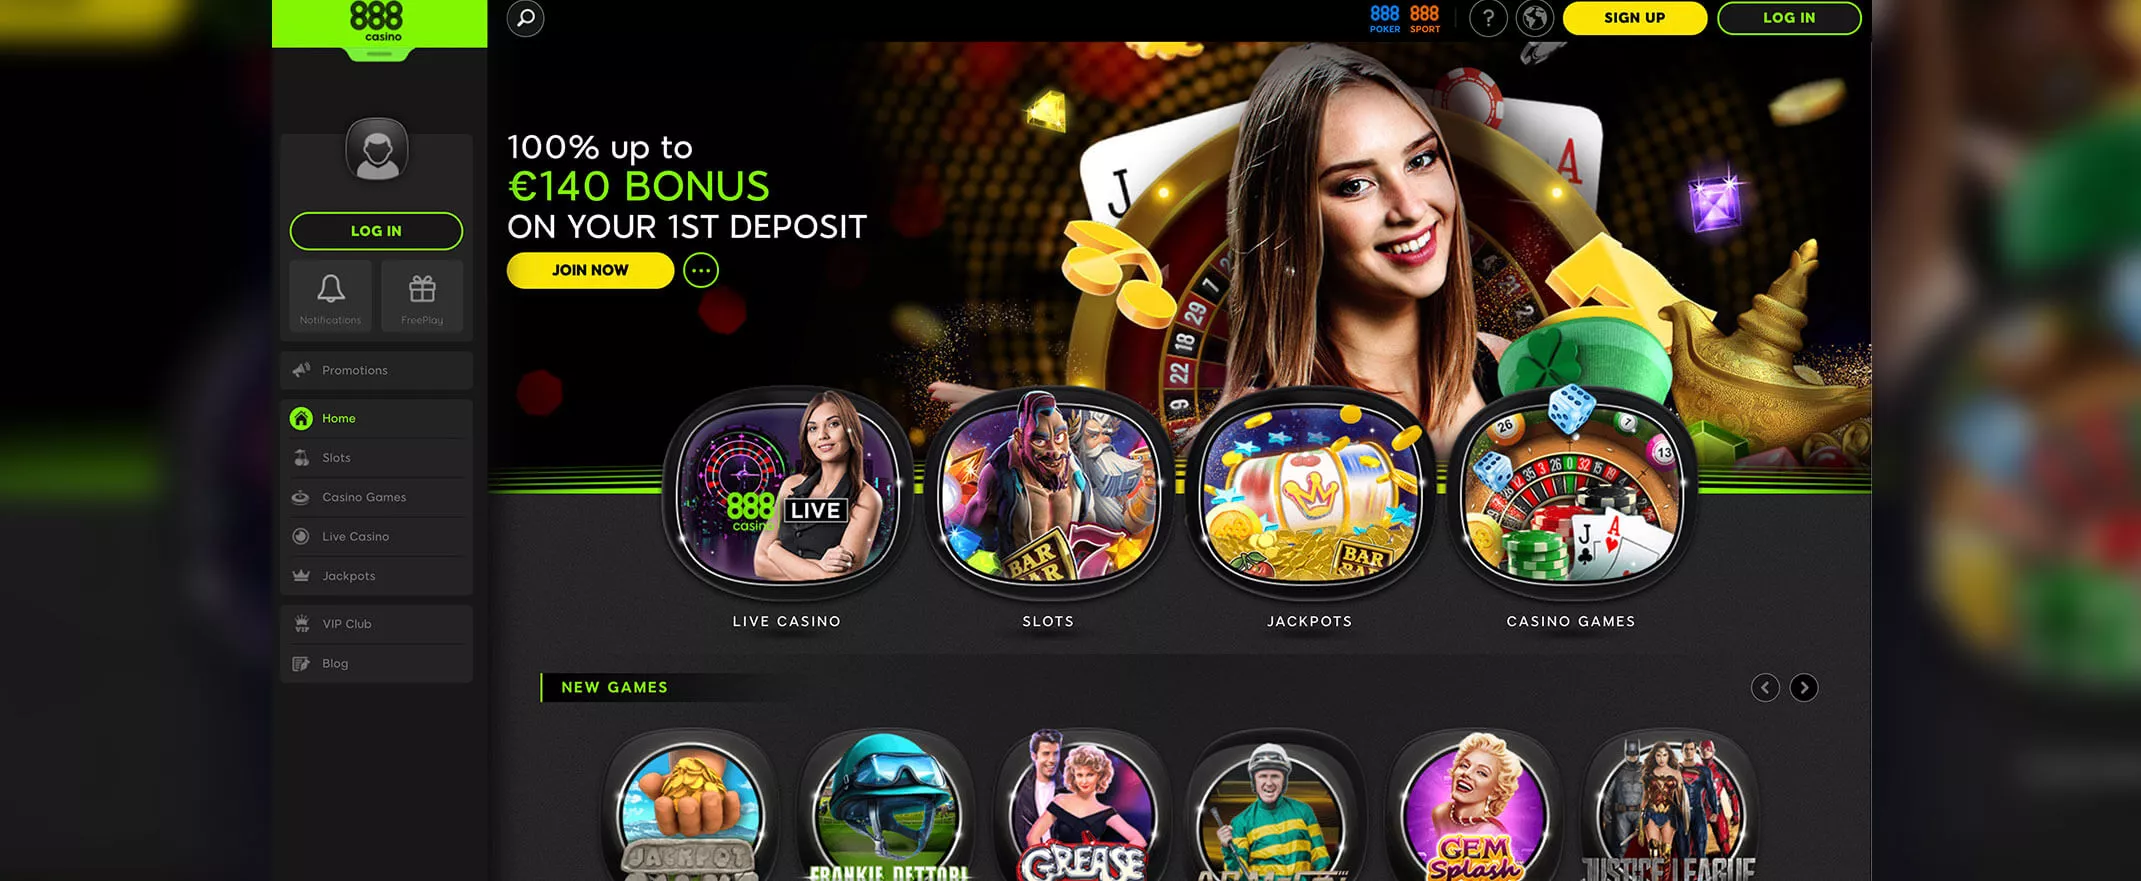 888 Casino screenshot of the homepage